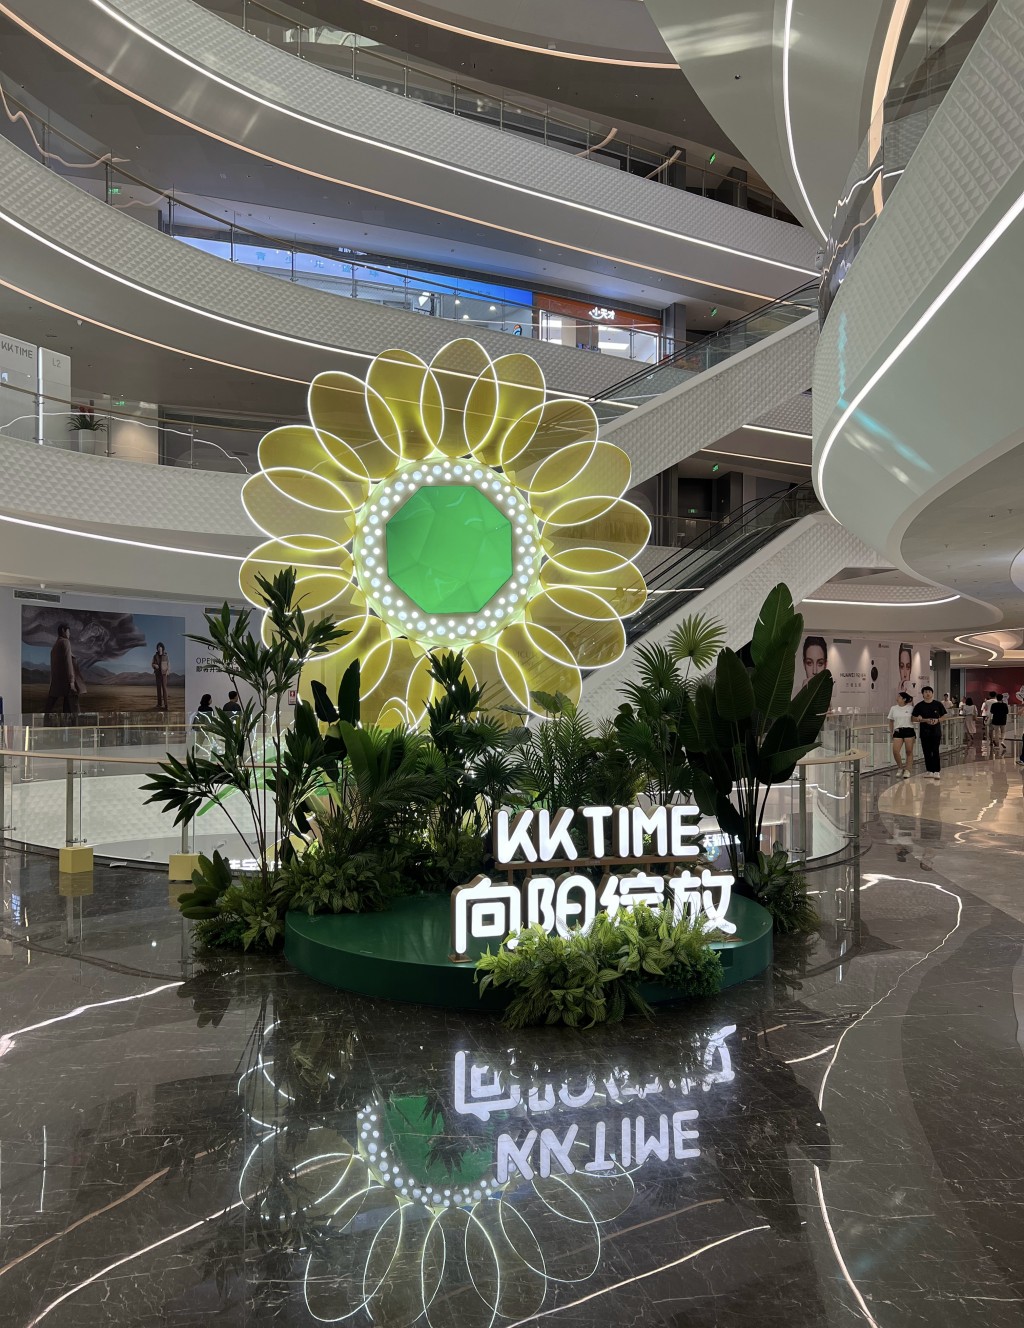 深圳新商场KK TIME。 微博